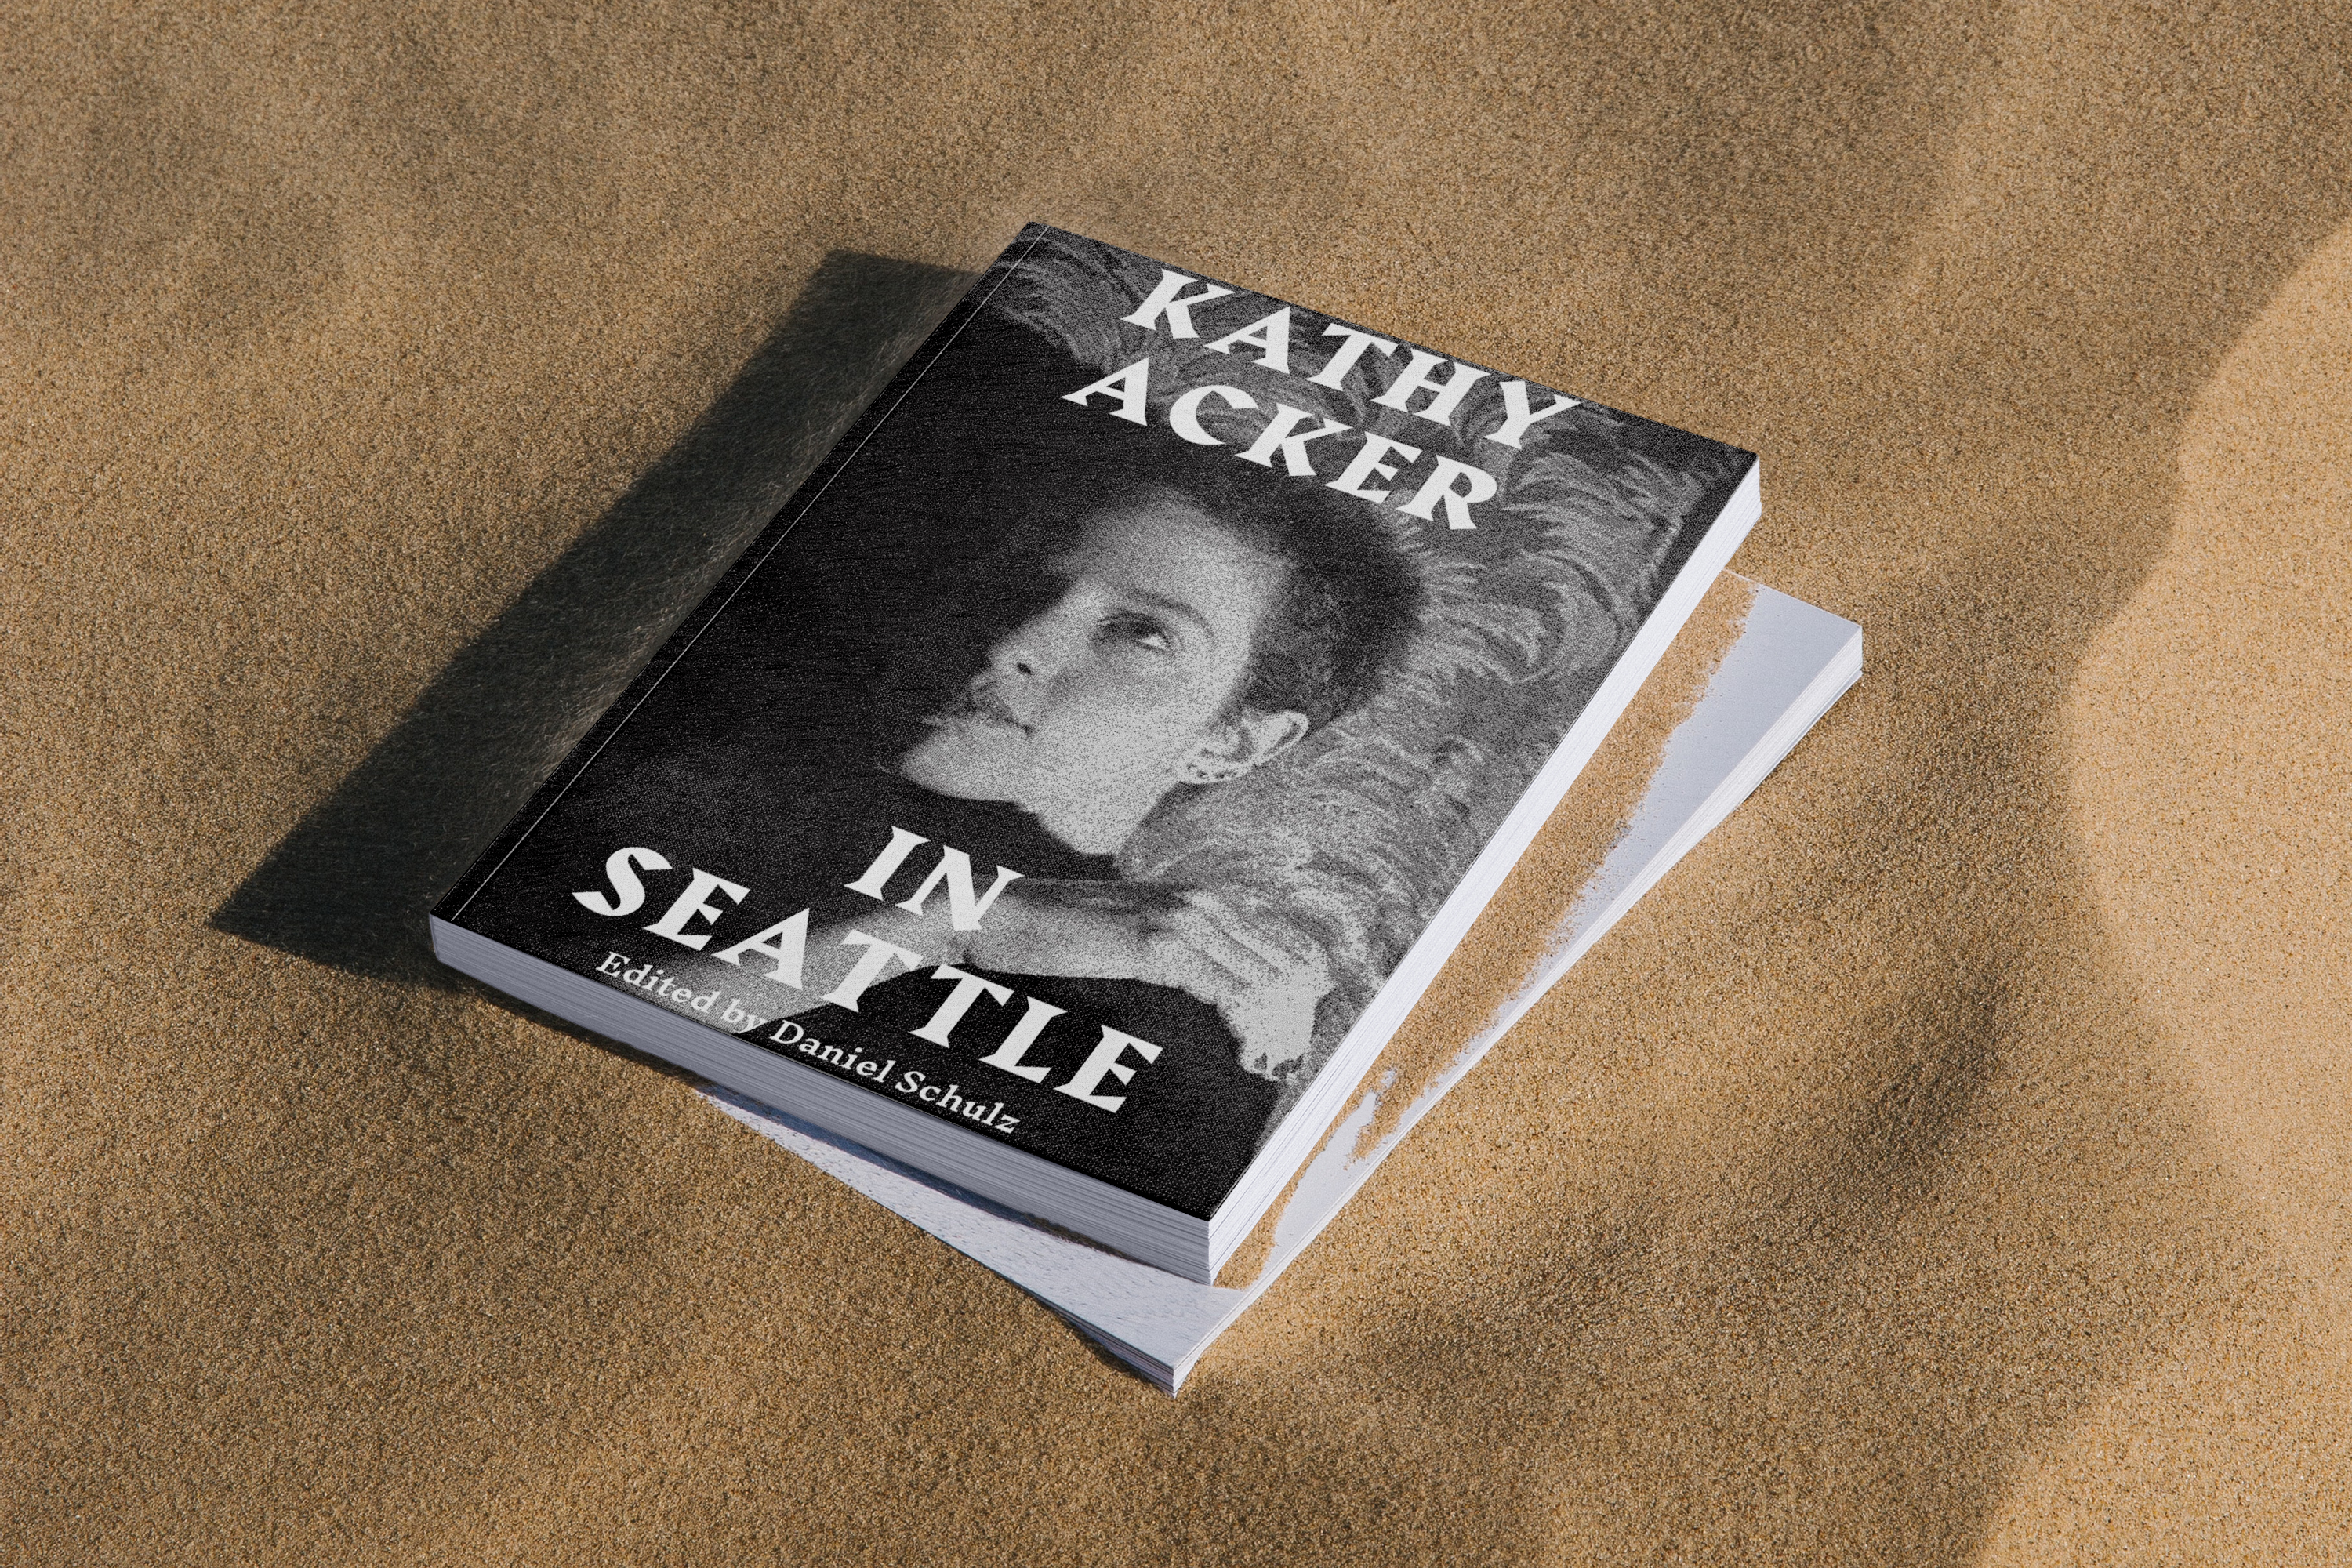 Kathy Acker in Seattle ed. by Daniel Schulz - book